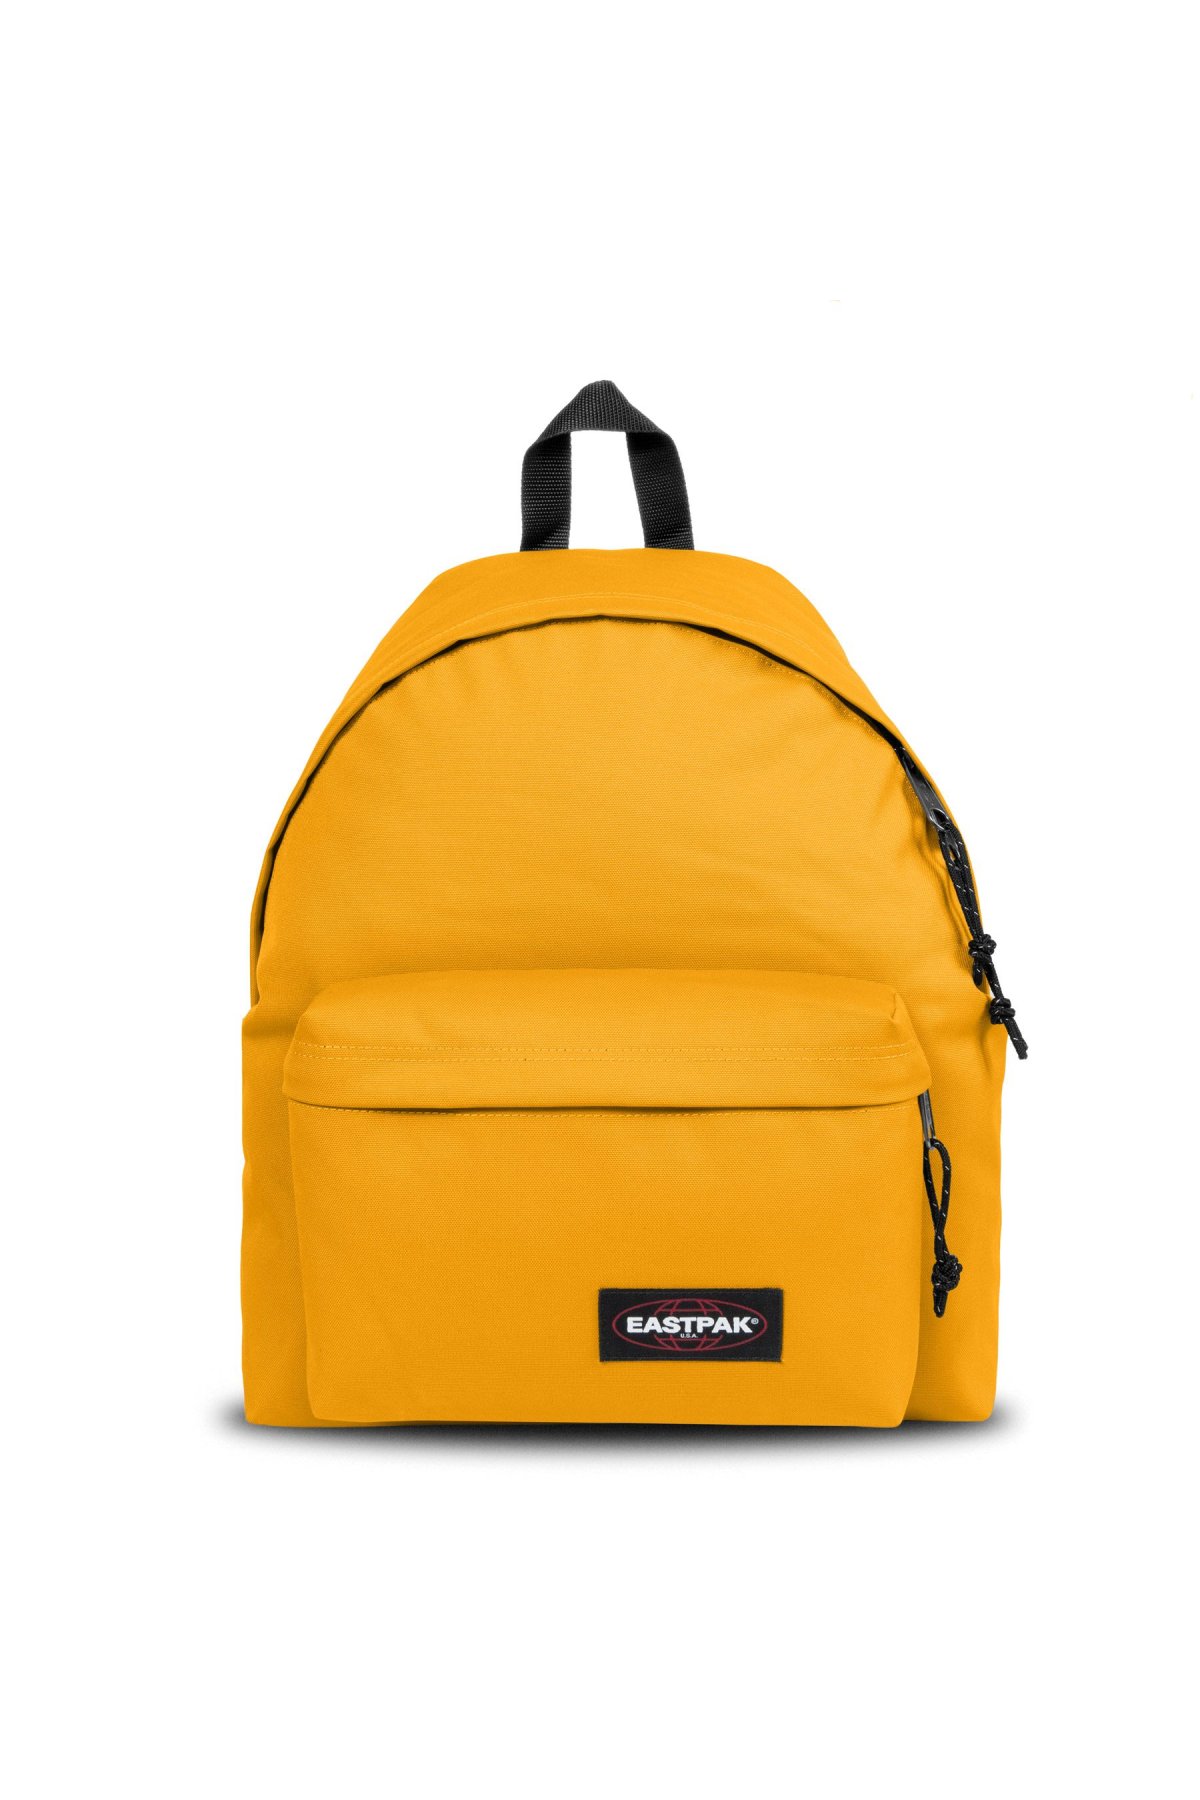 Eastpak EK0006205D21 Backpack oranžový 24l